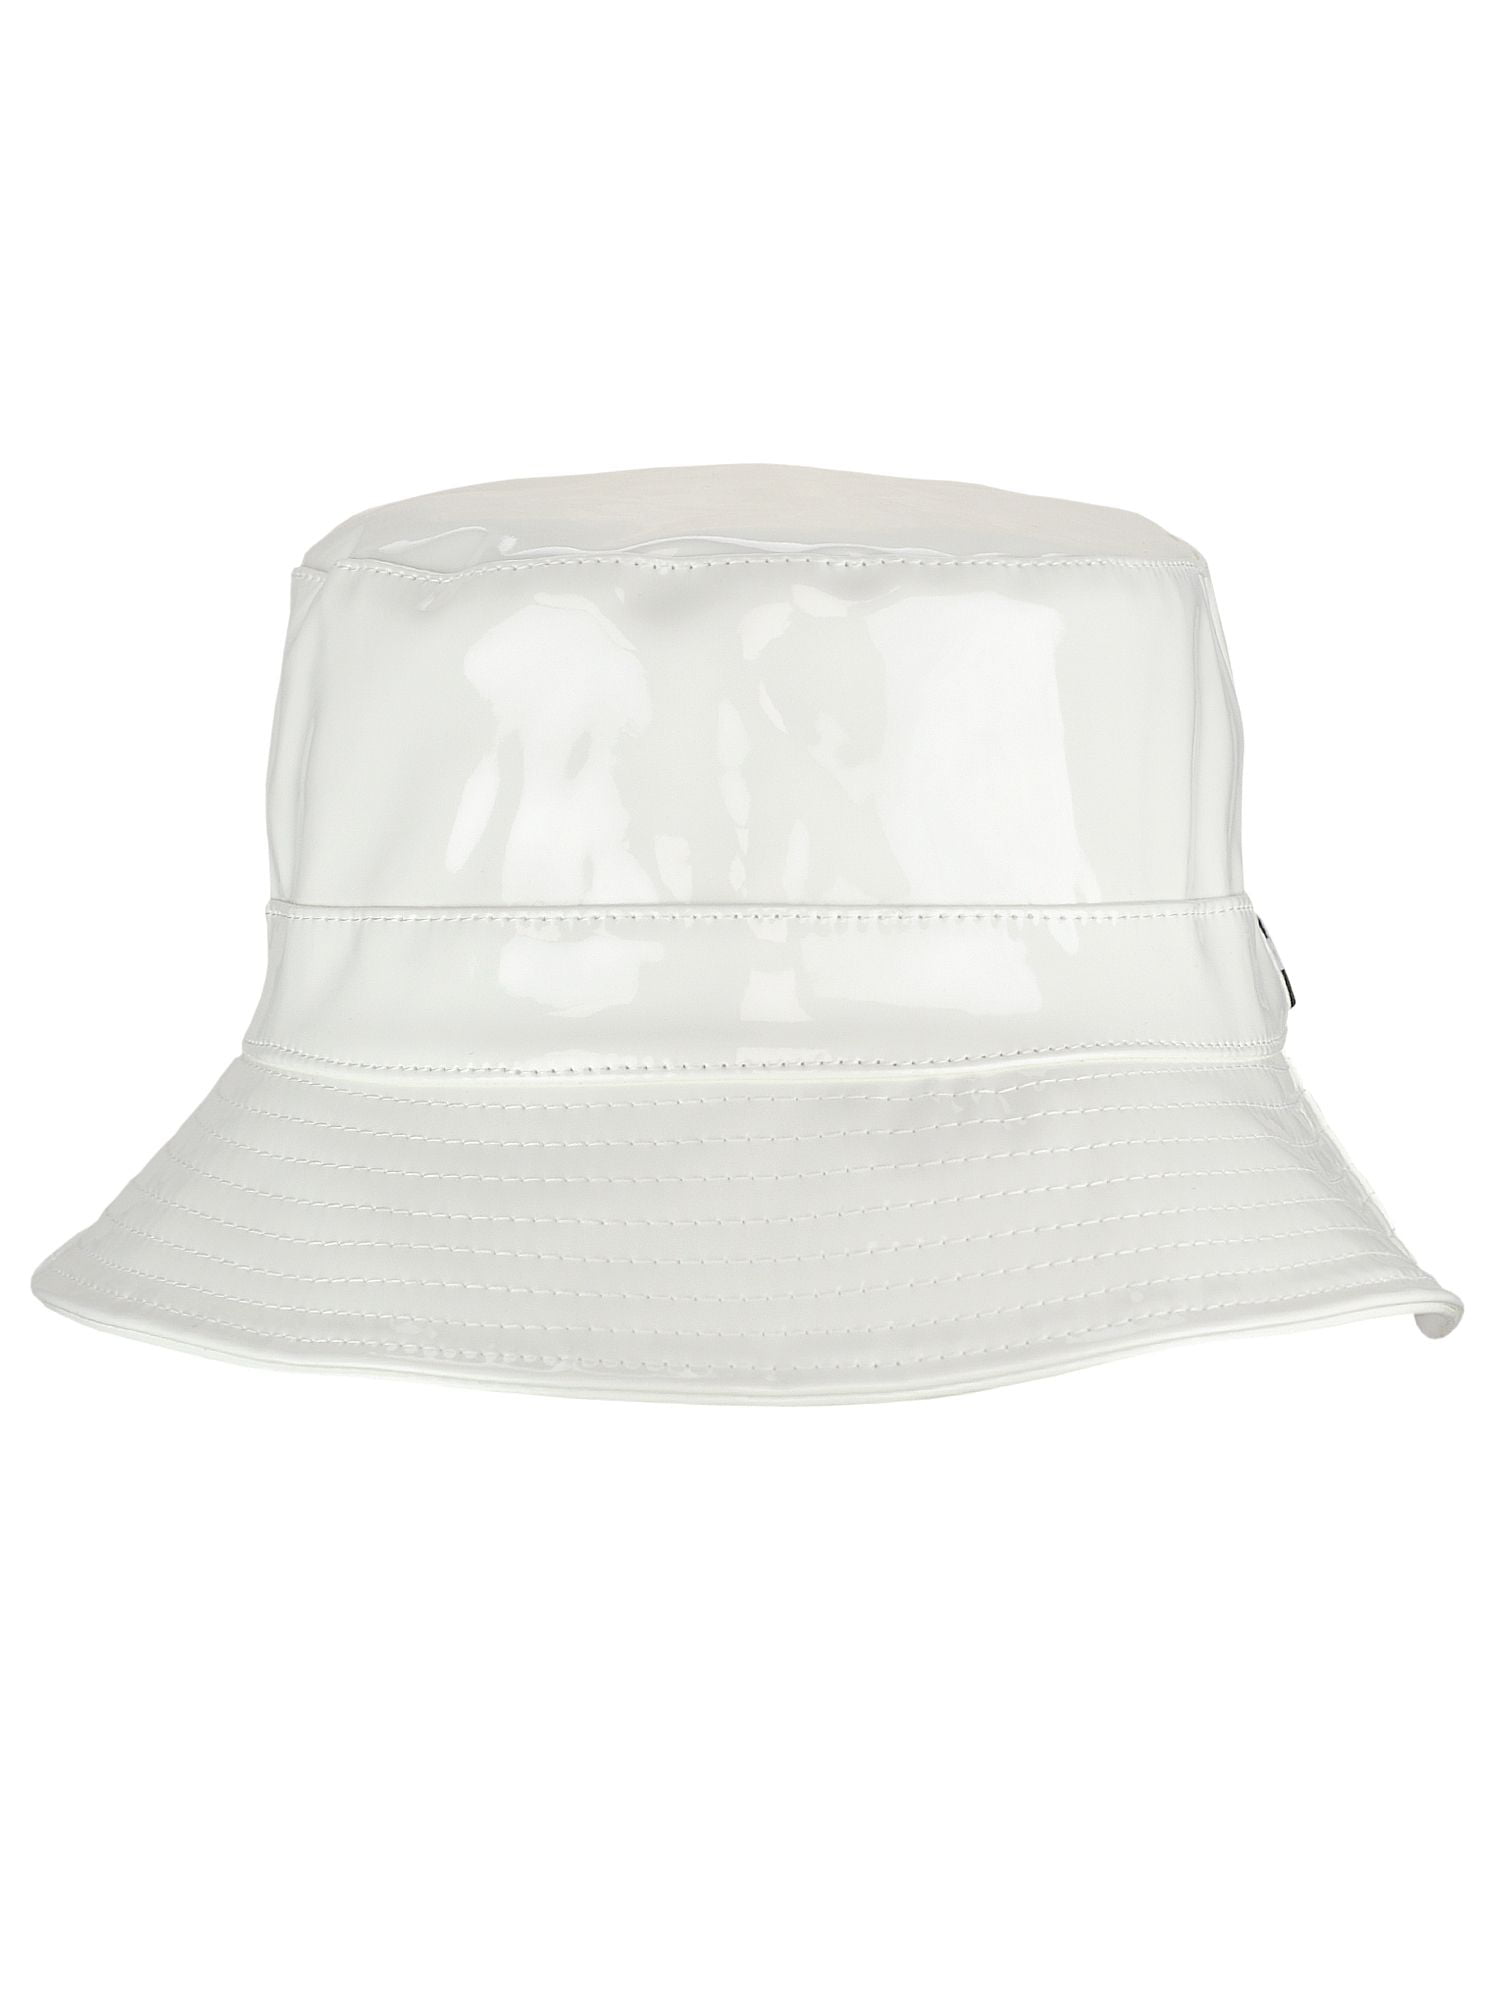 C.C Womens All Season Foldable Waterproof Rain Bucket Hat